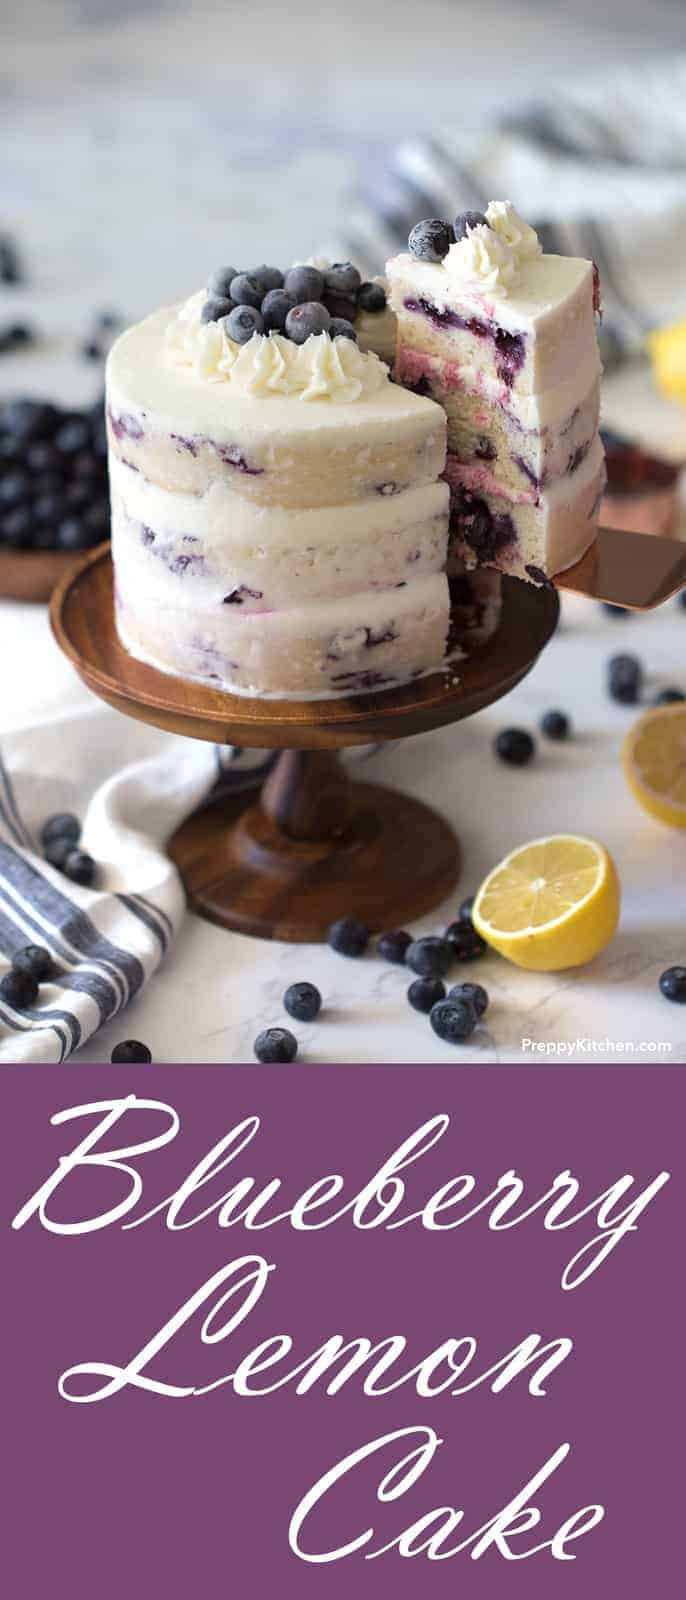 Blueberry Birthday Cake Recipes
 Lemon Blueberry Cake Preppy Kitchen